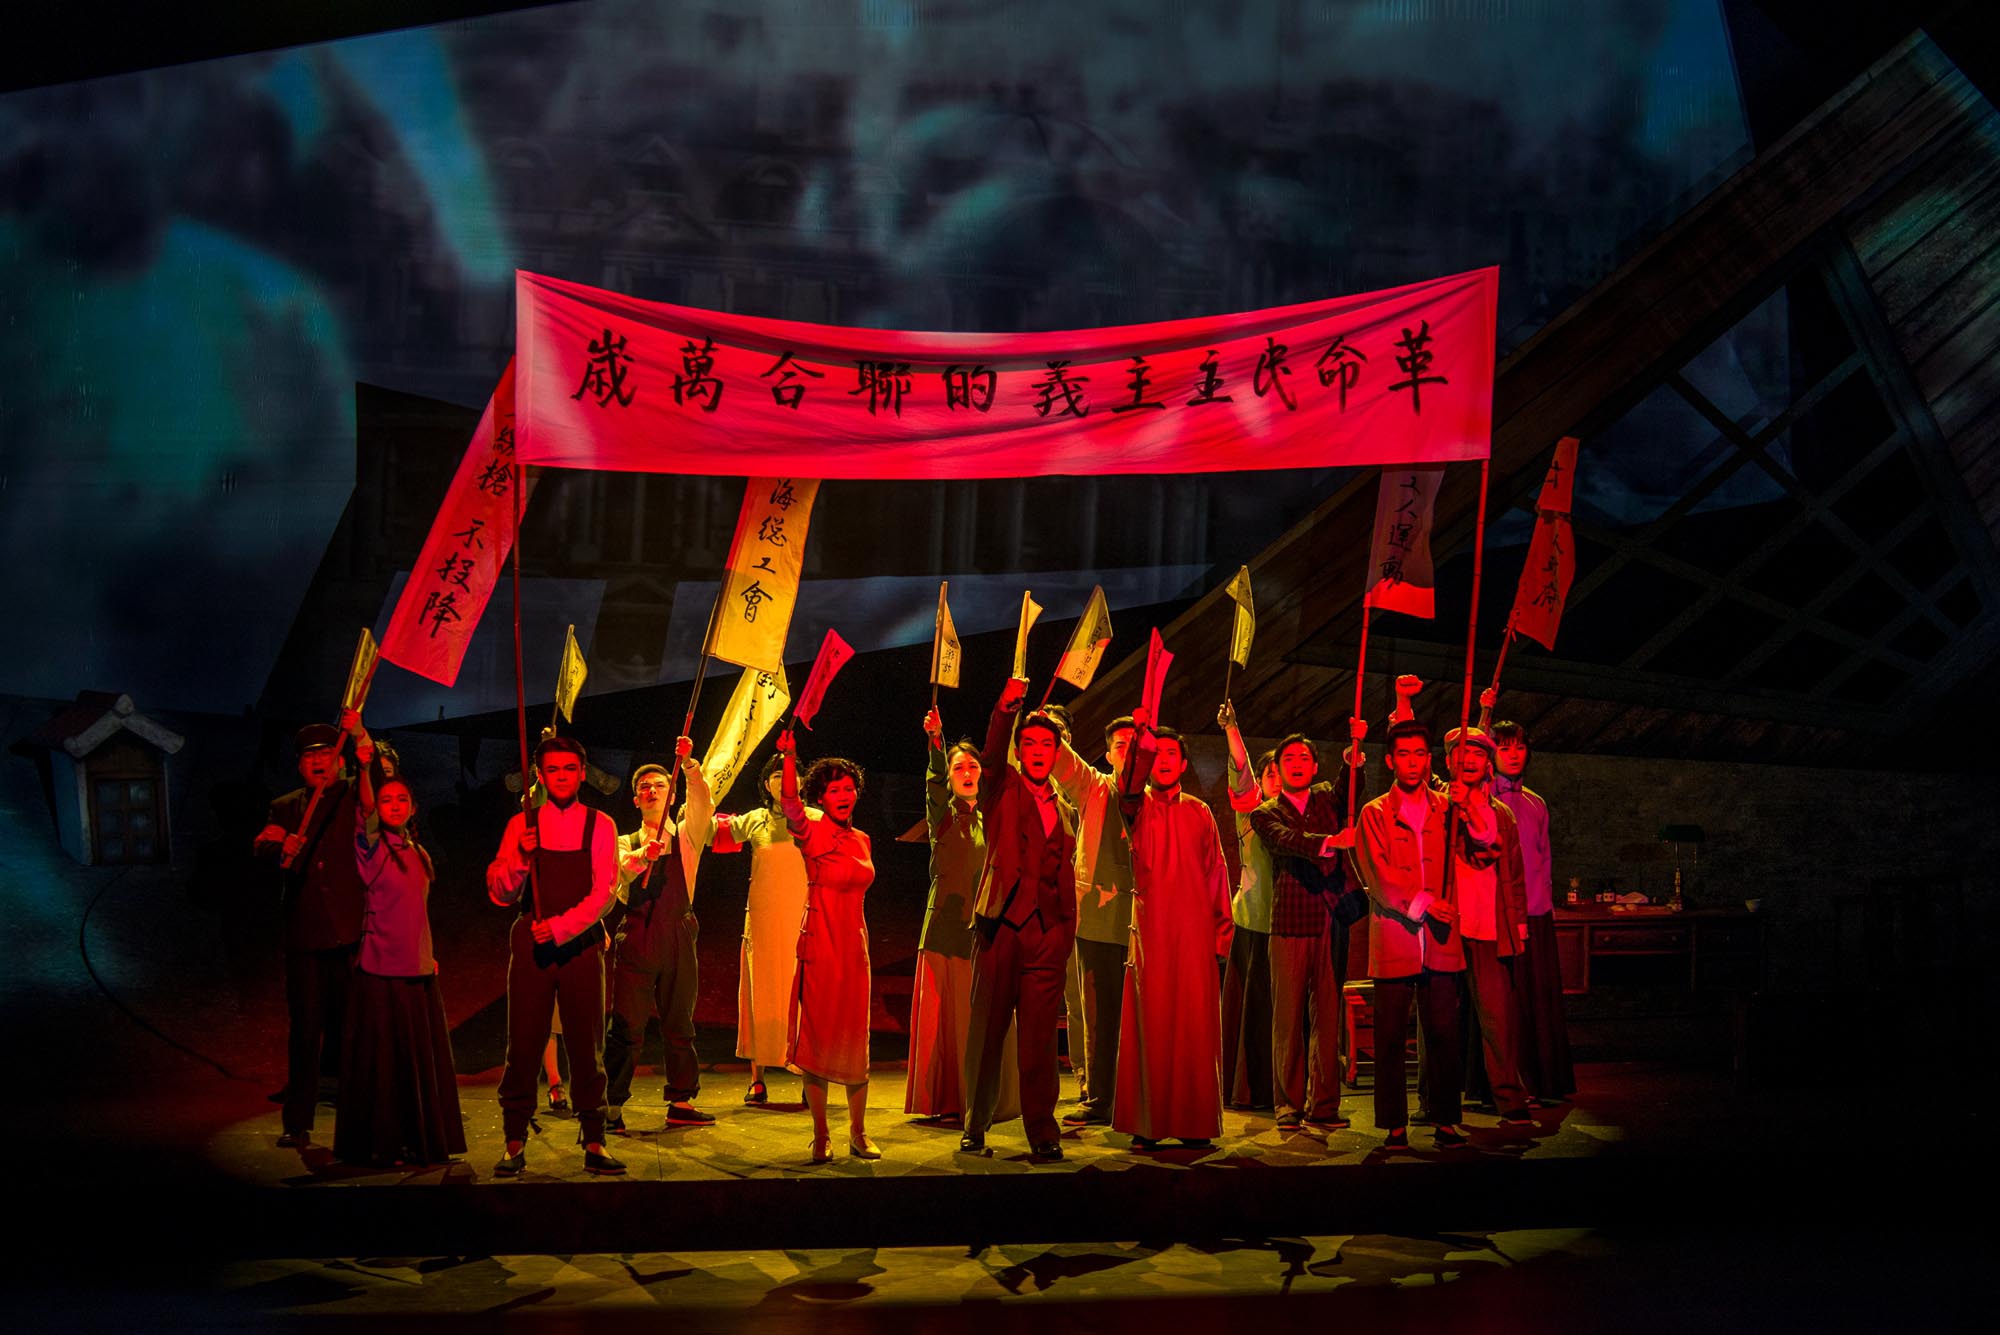 《守护》在中国国家话剧院上演 讲述党章守护人张人亚的故事